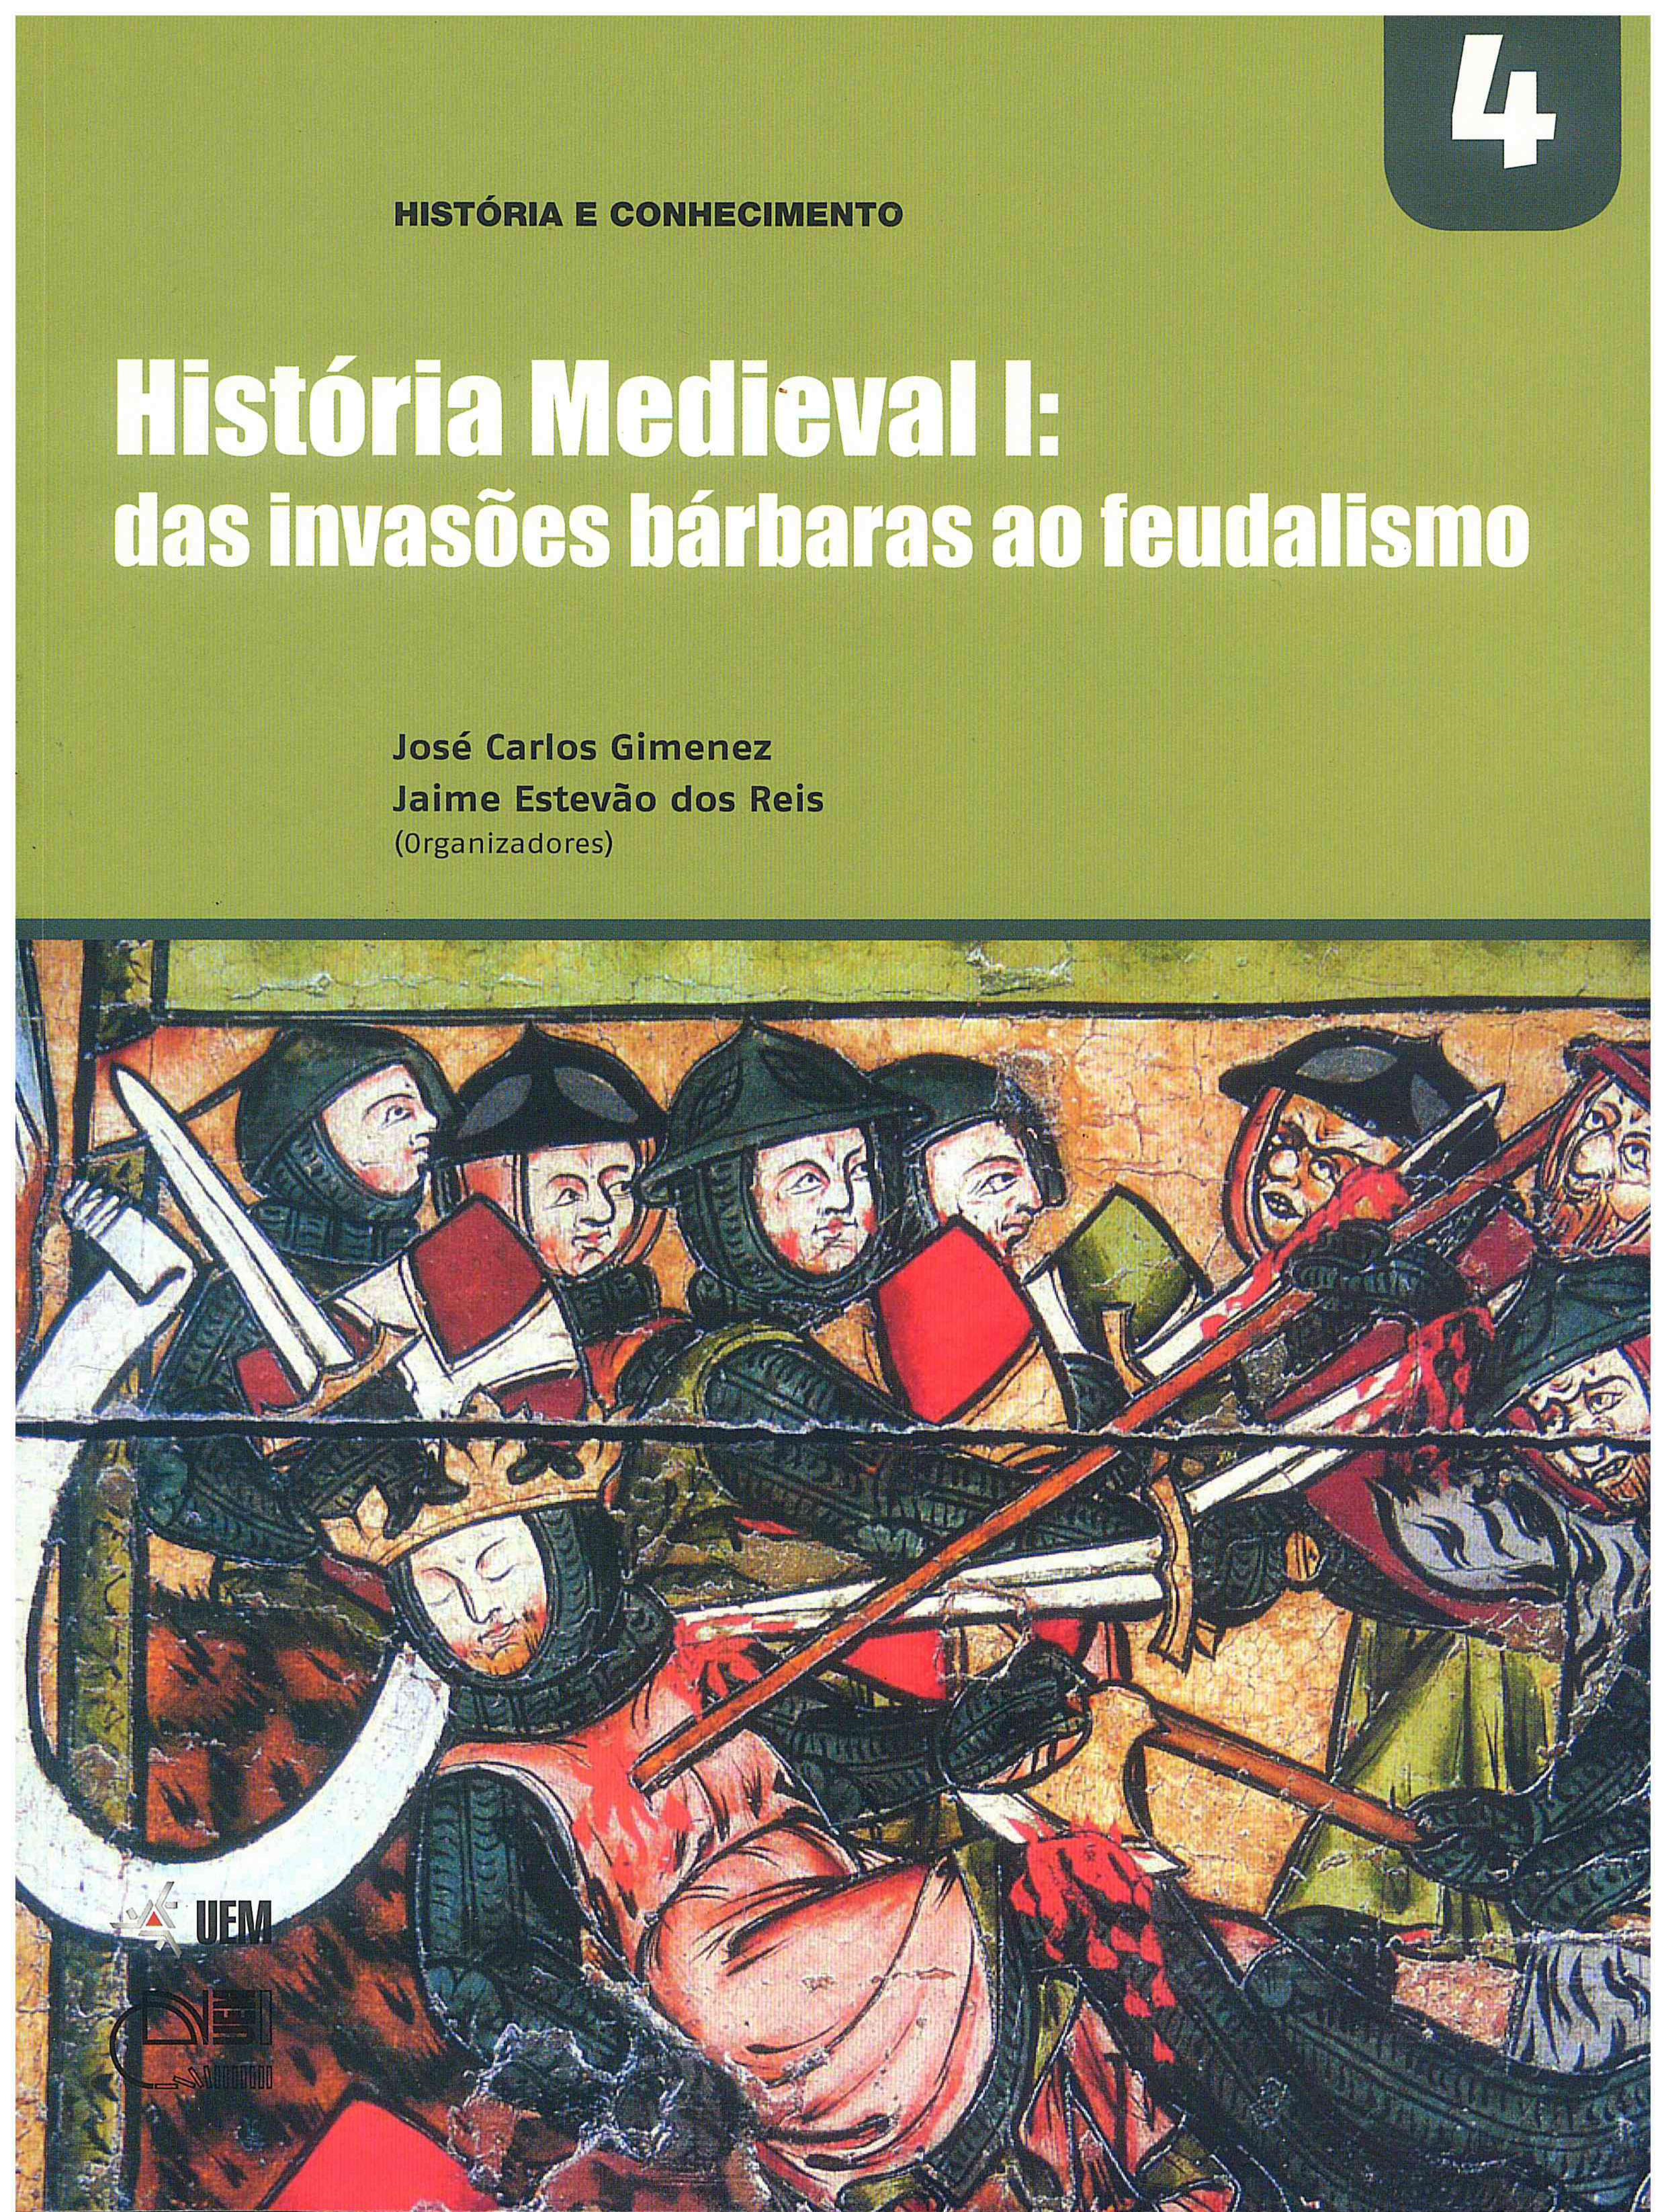 GIMENEZ, J. C.; REIS, J. E. (Orgs.). História Medieval I: das invasões bárbaras ao feudalismo